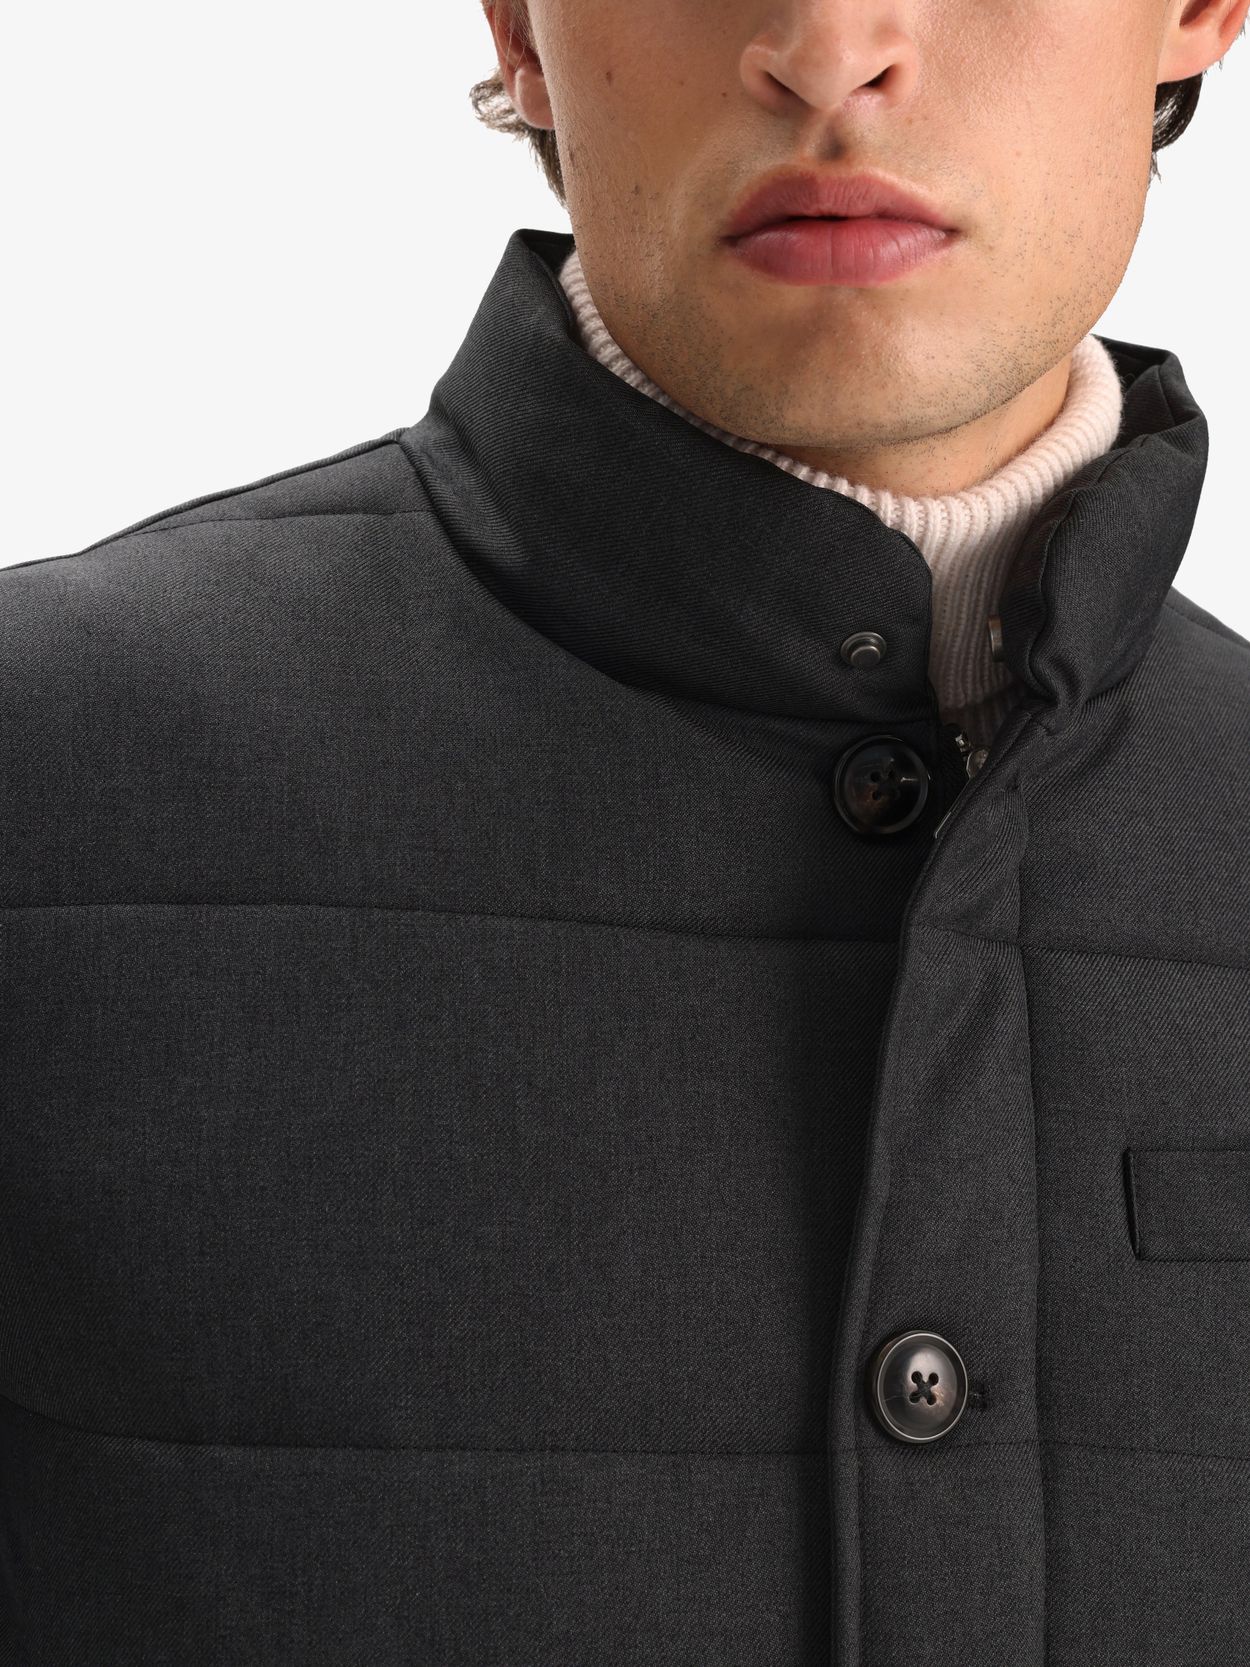 Grey Padded Jacket